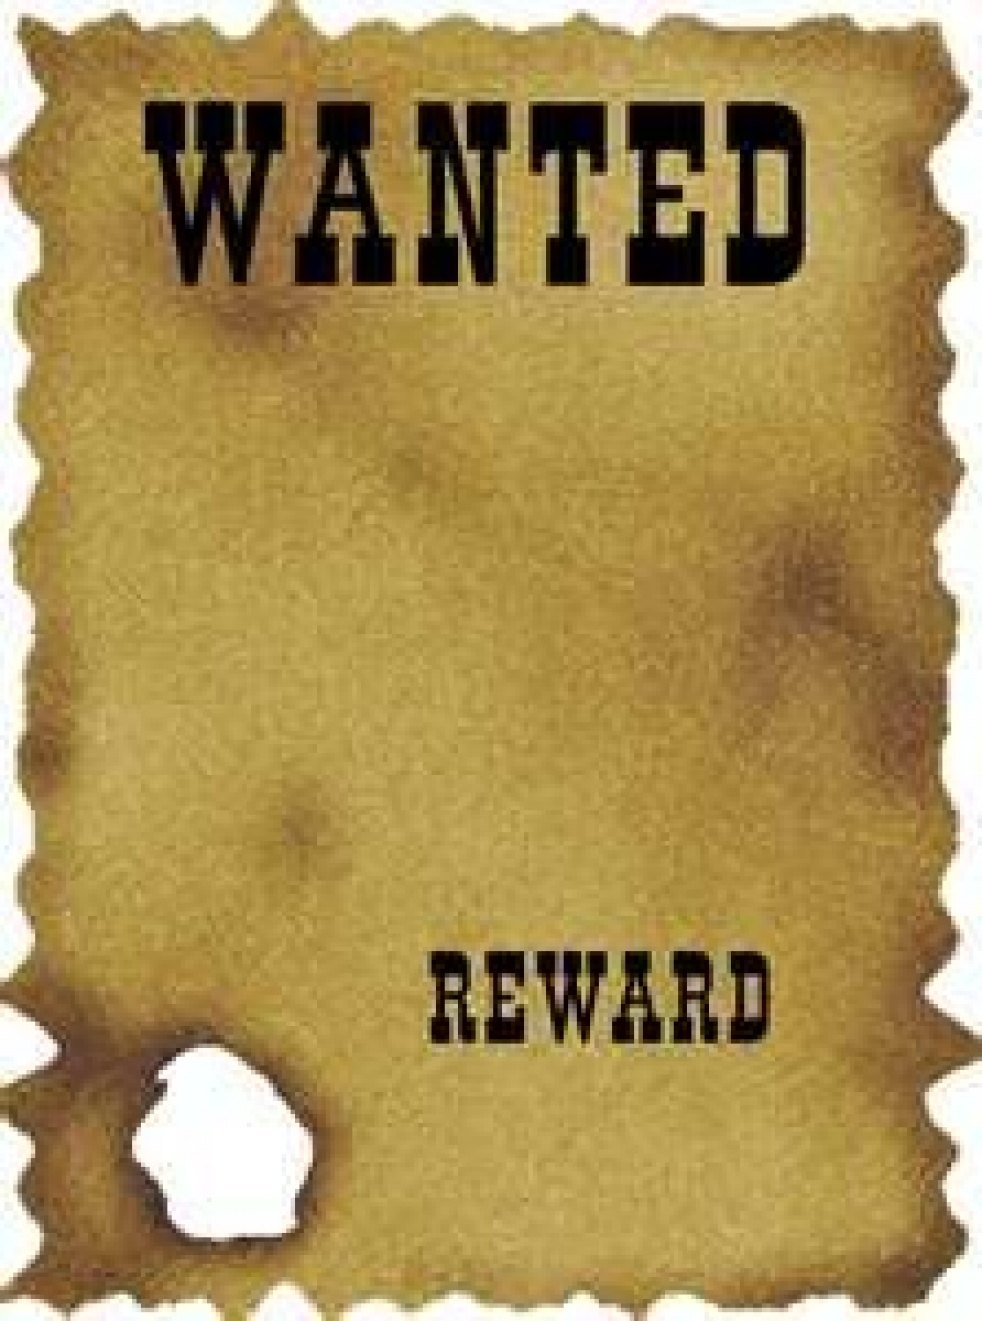 Обложка wanted. Плакат вантед. Wanted разыскивается. Постер wanted. Wanted картинка.